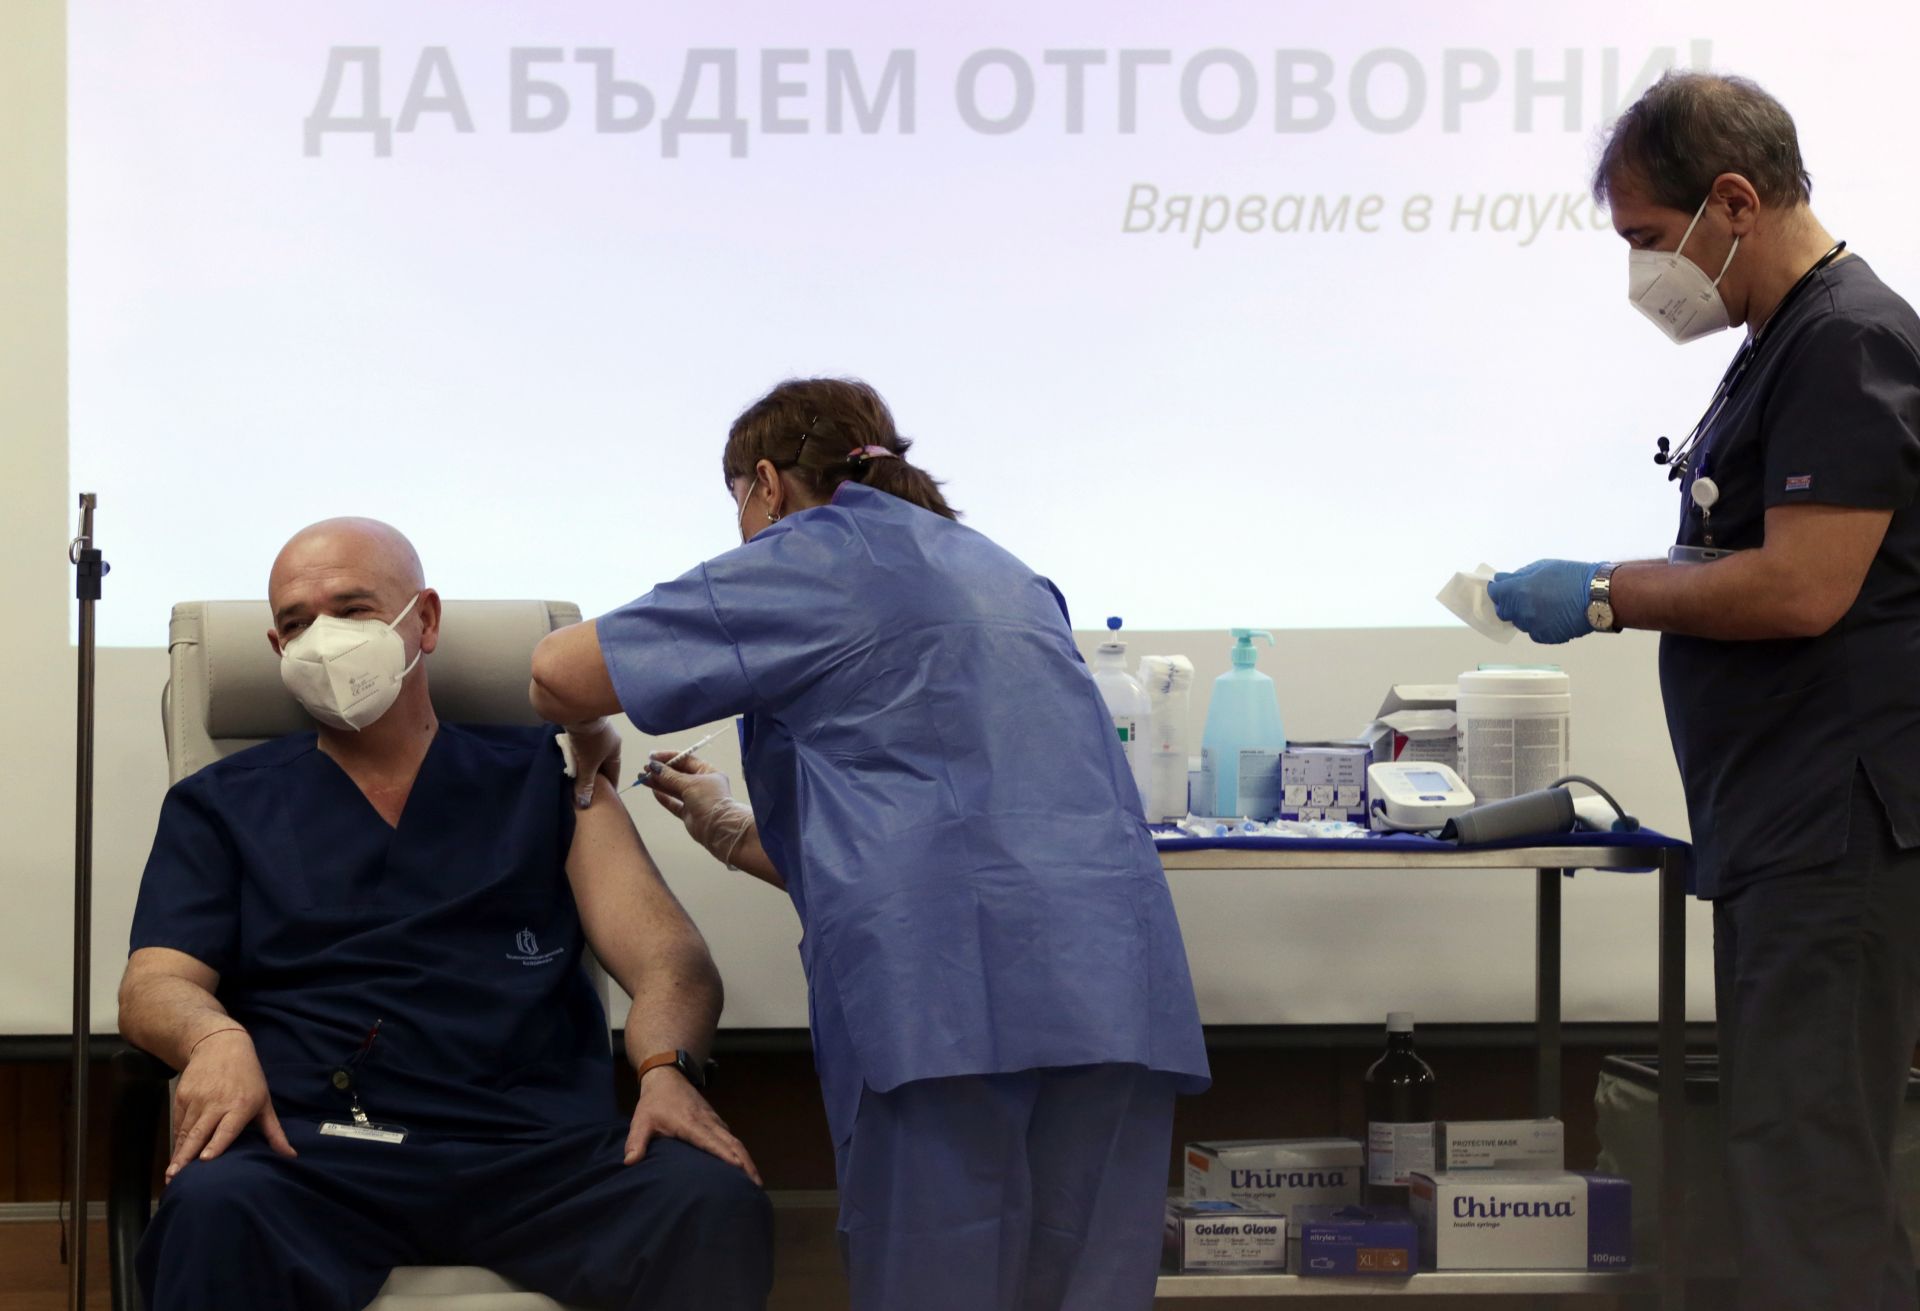 Темпът на ваксинацията зависи от одобряването на третата ваксина - тази на "Астра Зенека", каза ген. Мутафчийски. Той беше имунизиран на 27 декември 2020 г.